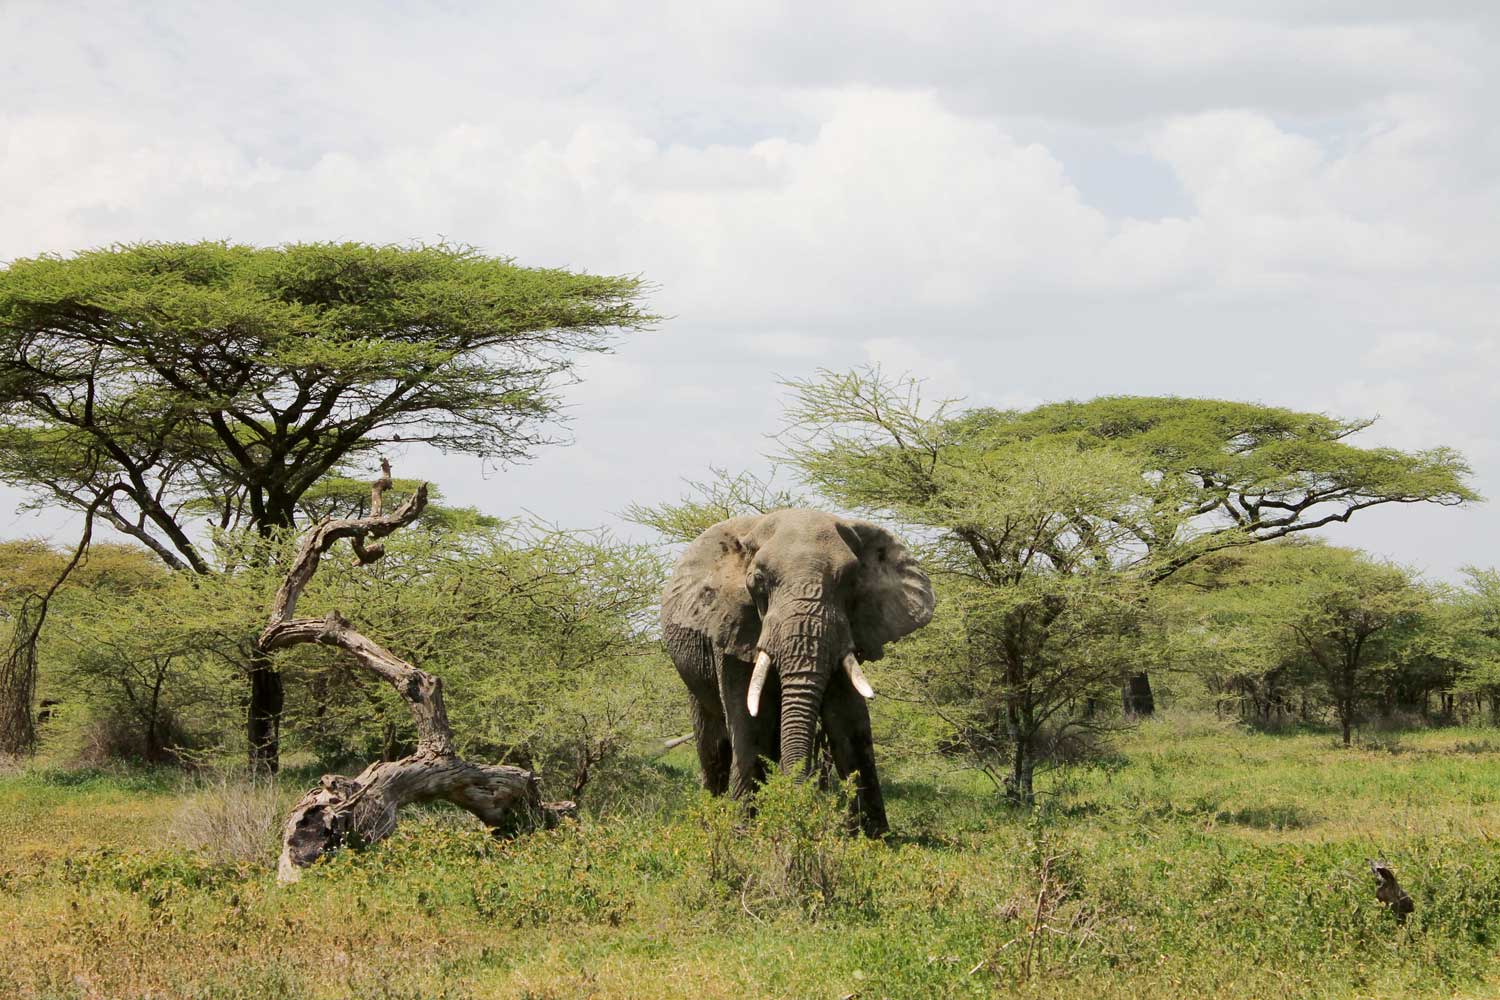 Ralph Lauren Goes on Safari (Image: Skylar Furley)